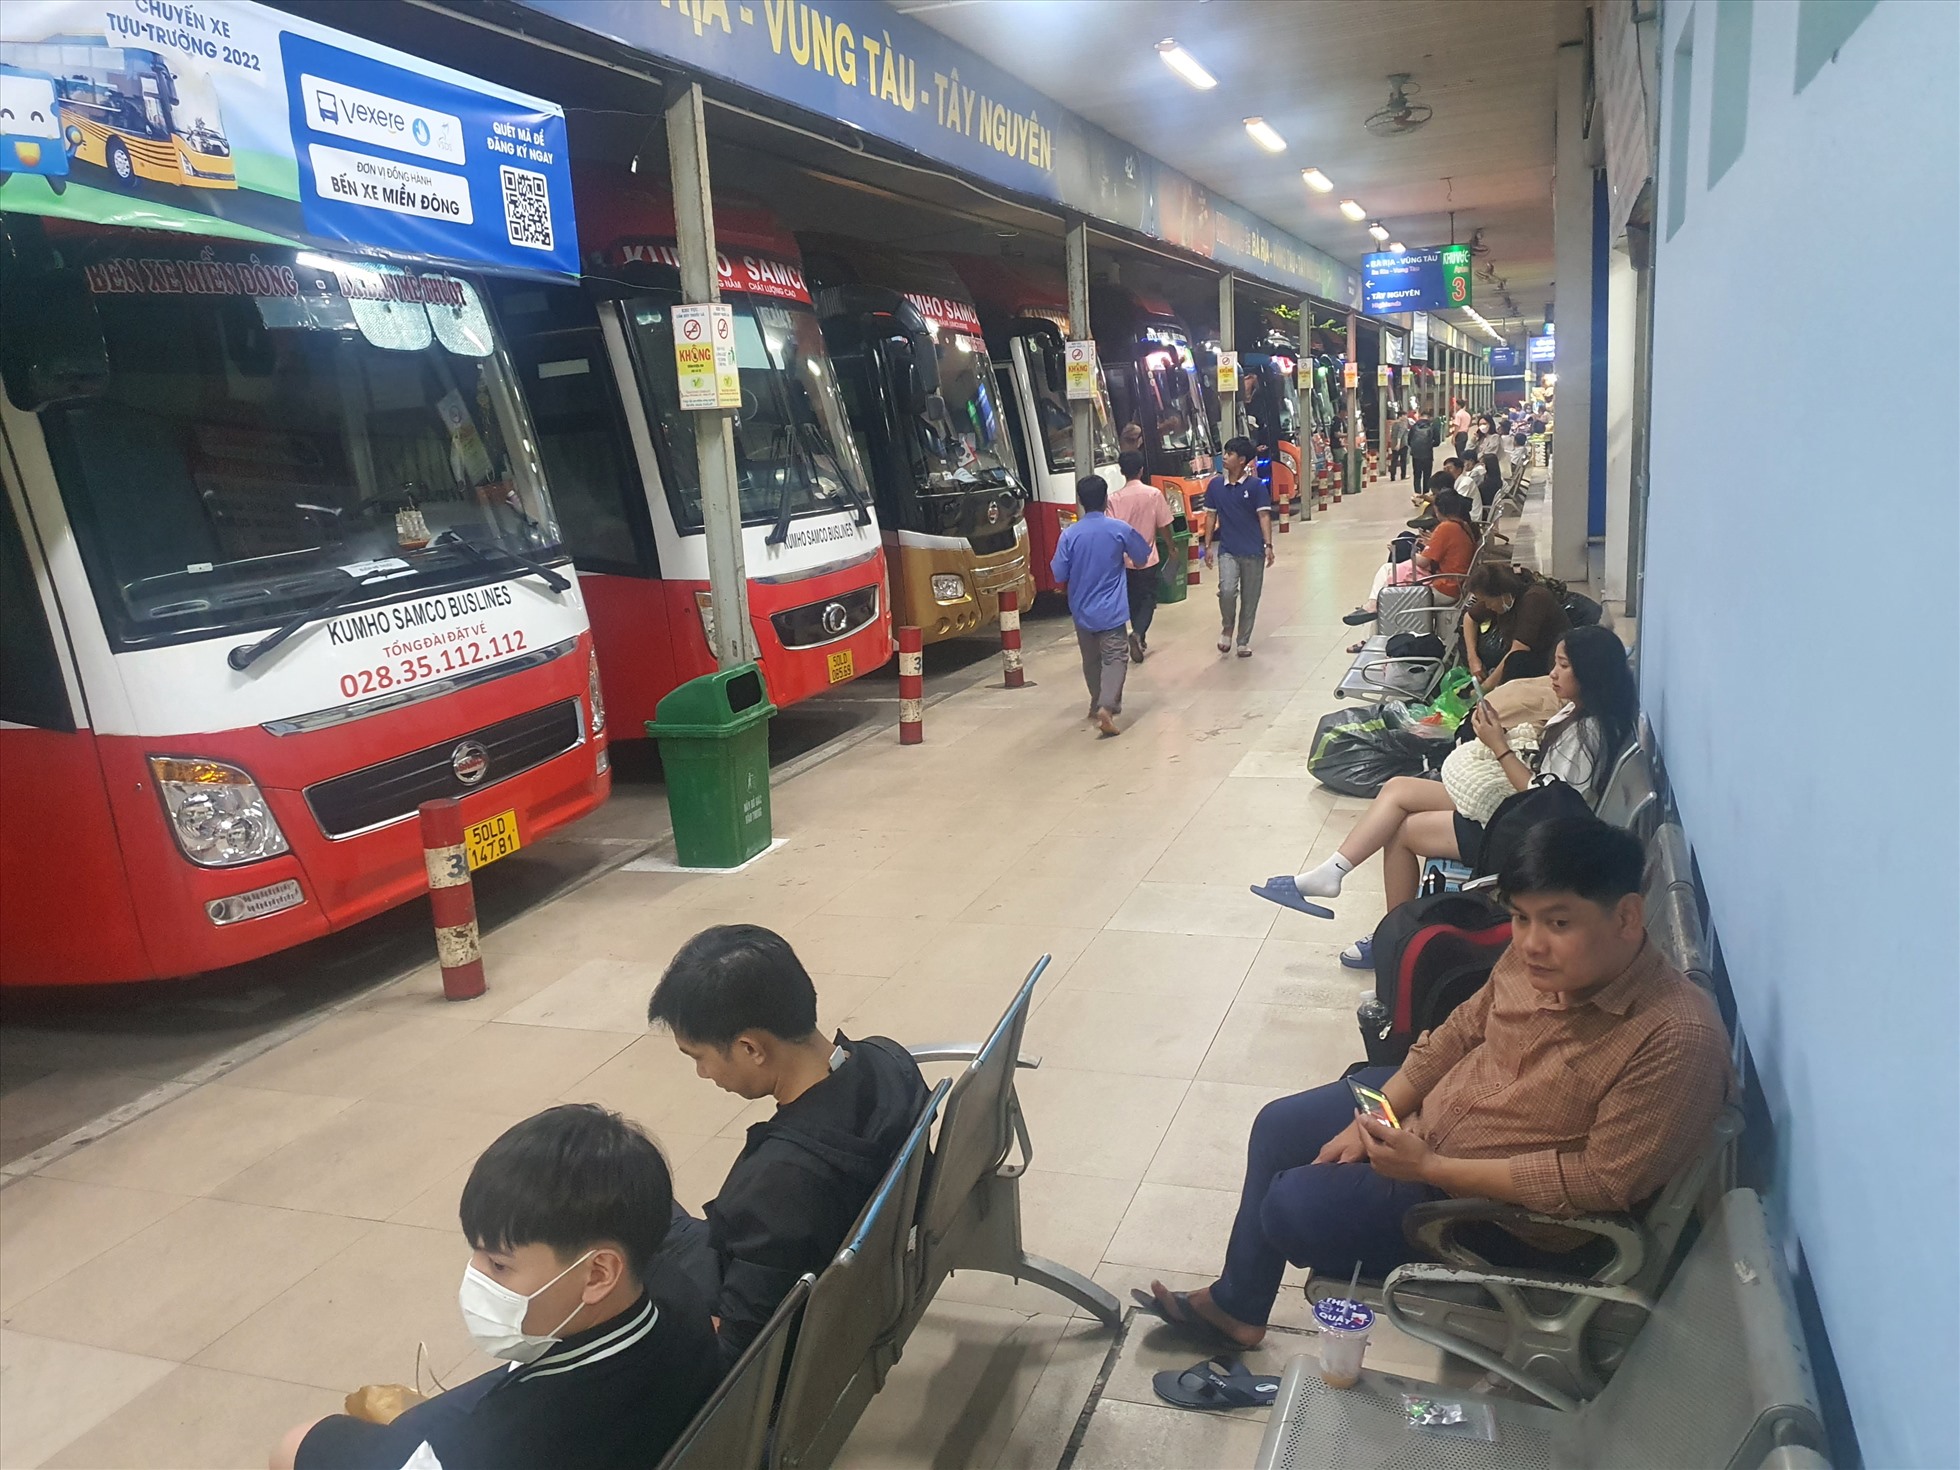 Ghi nhận của Lao Động, tối ngày 30.12, tại Bến xe Miền Đông (quận Bình Thạnh),  lượng khách đến bến khá ít, không có cảnh đông đúc chờ xe về quê nghỉ lễ như những năm trước.